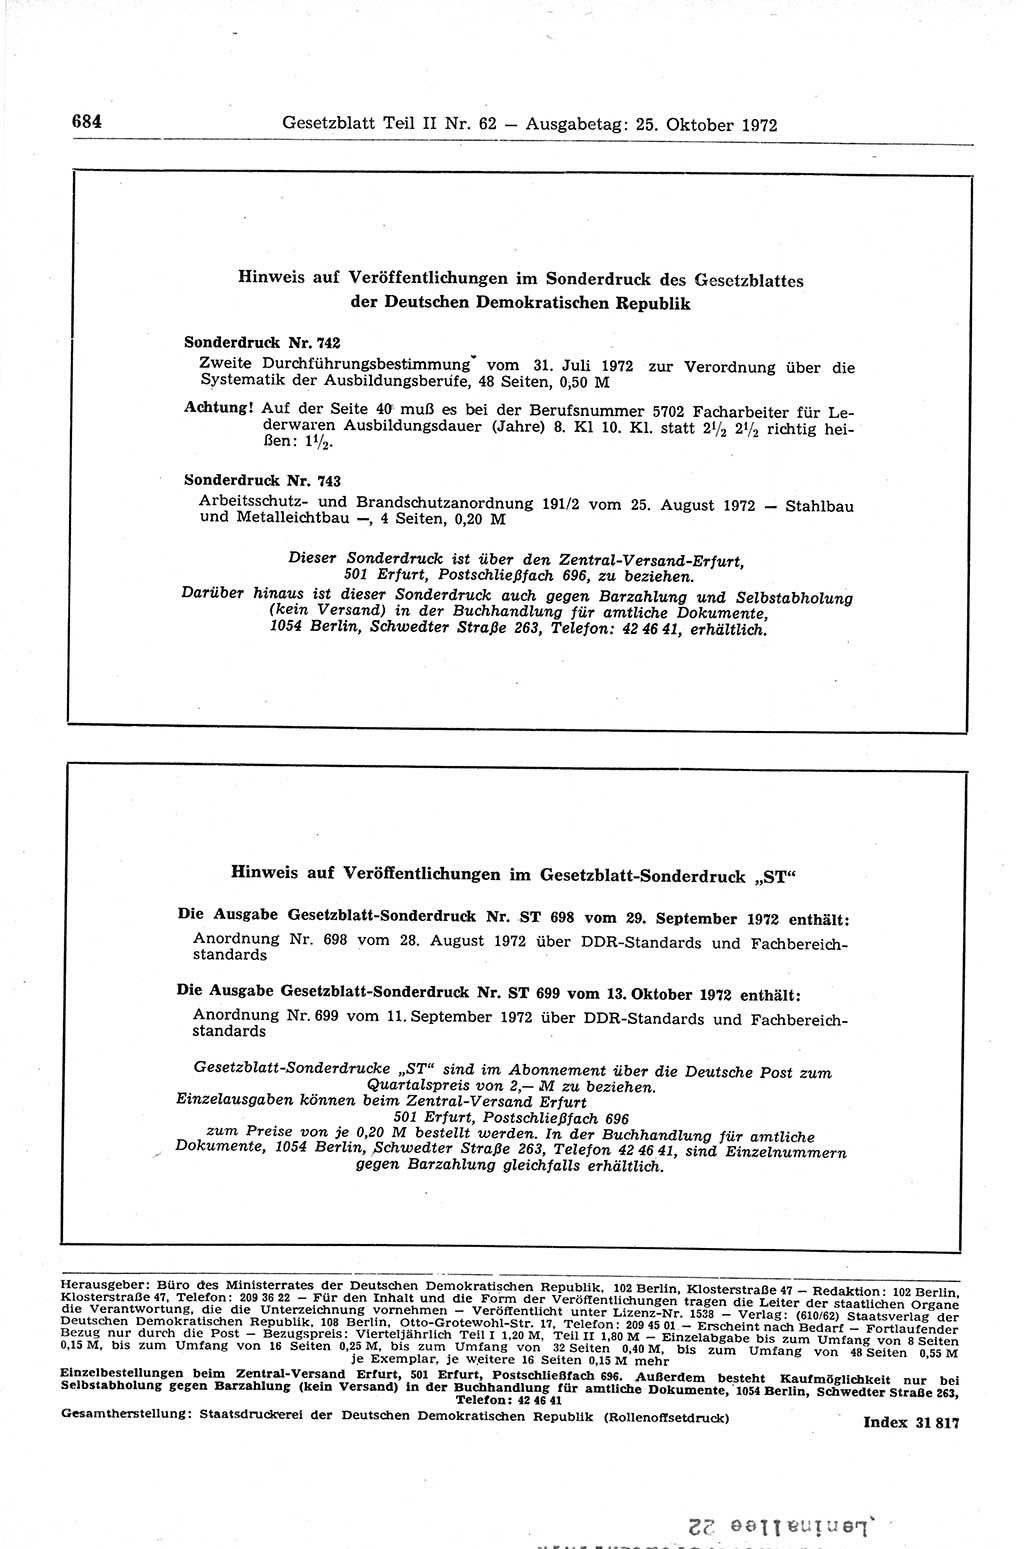 Gesetzblatt (GBl.) der Deutschen Demokratischen Republik (DDR) Teil ⅠⅠ 1972, Seite 684 (GBl. DDR ⅠⅠ 1972, S. 684)